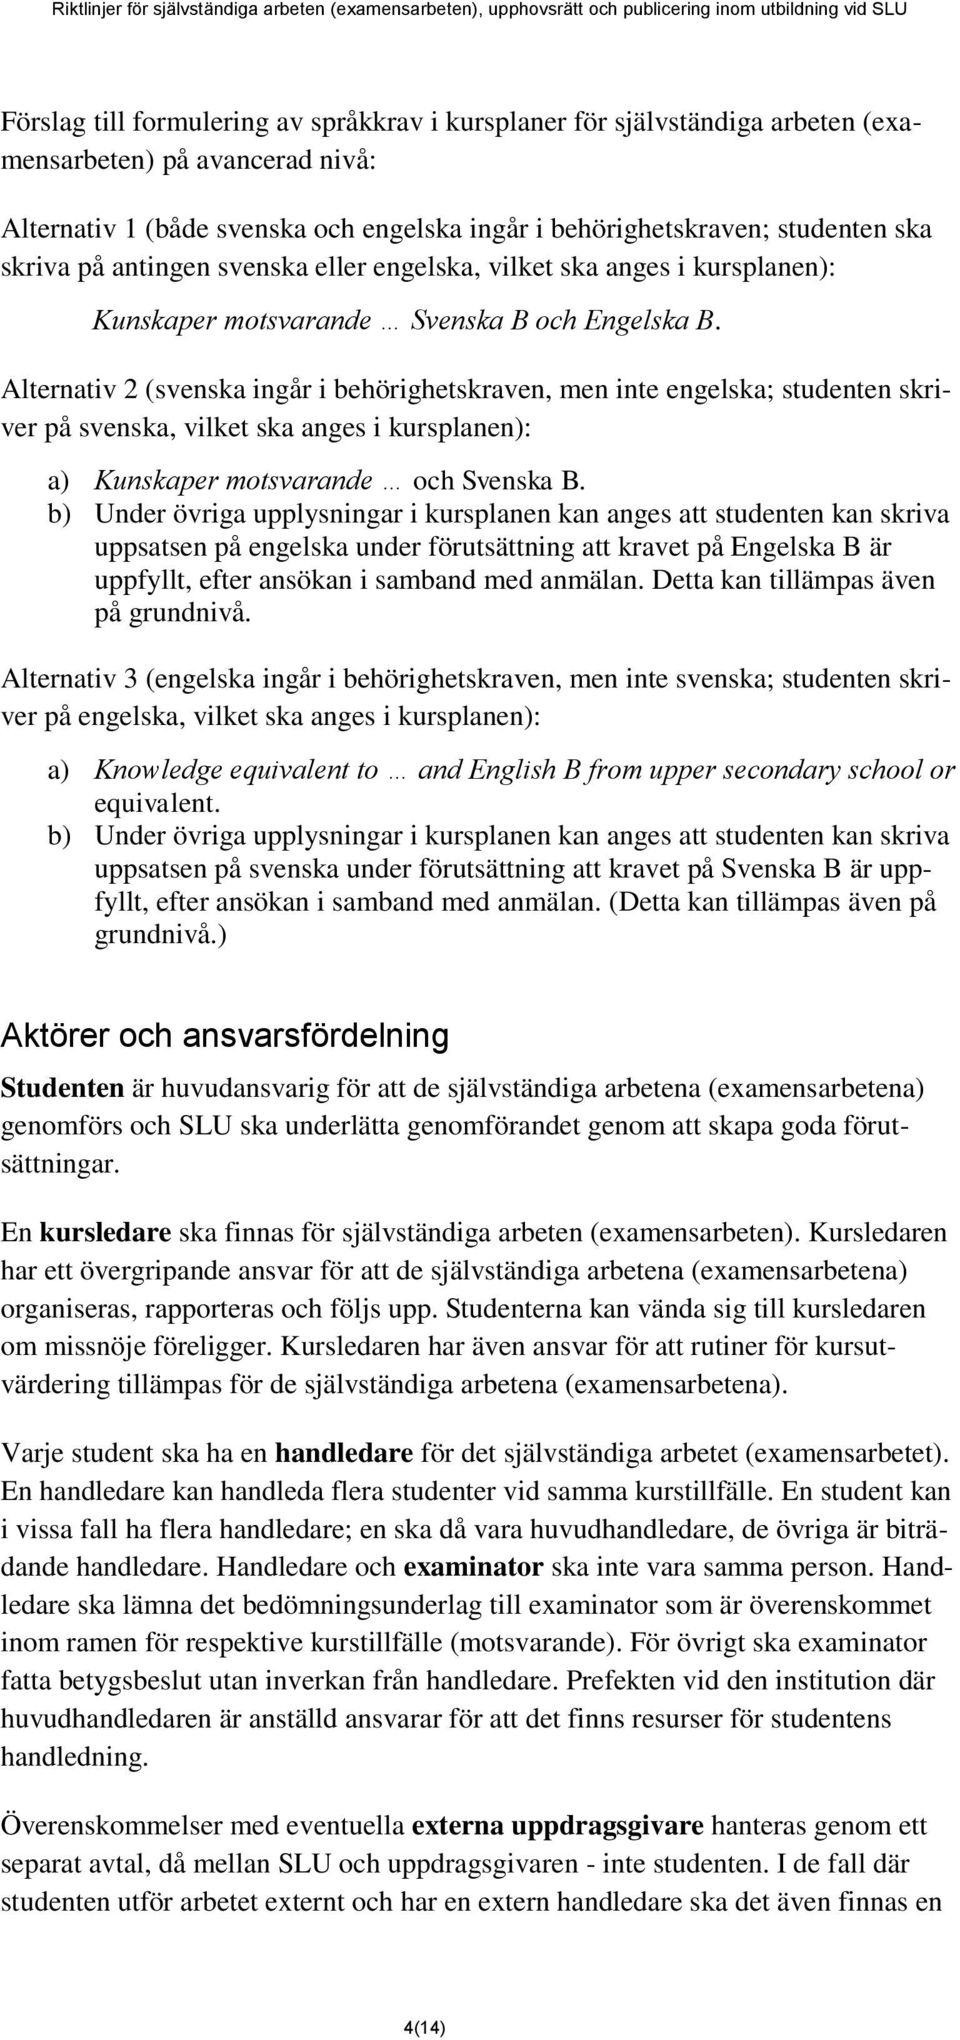 Alternativ 2 (svenska ingår i behörighetskraven, men inte engelska; studenten skriver på svenska, vilket ska anges i kursplanen): a) Kunskaper motsvarande och Svenska B.